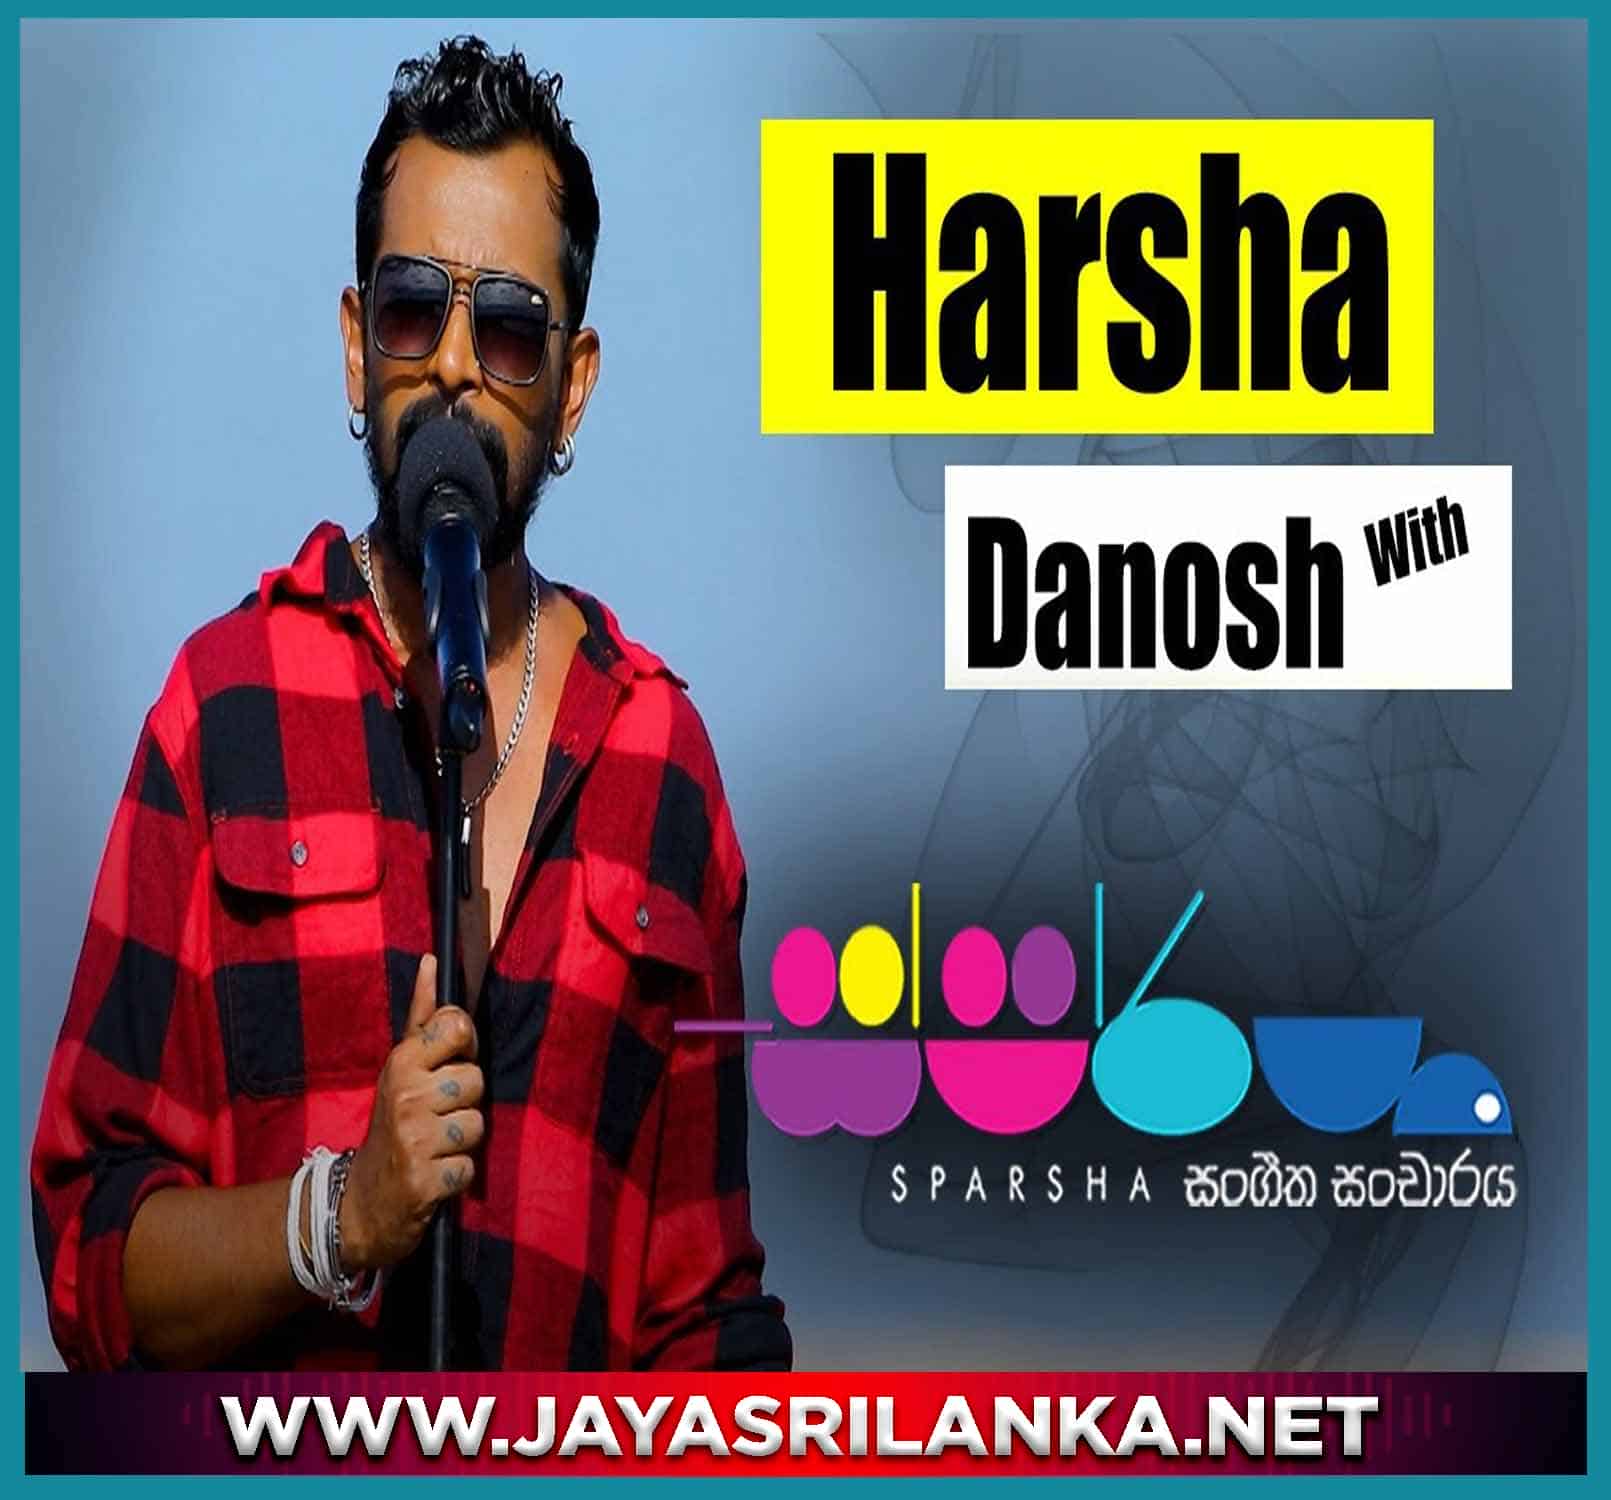 01 - Tharahak Na Adath (Sparsha) - Harsha Danosh mp3 Image